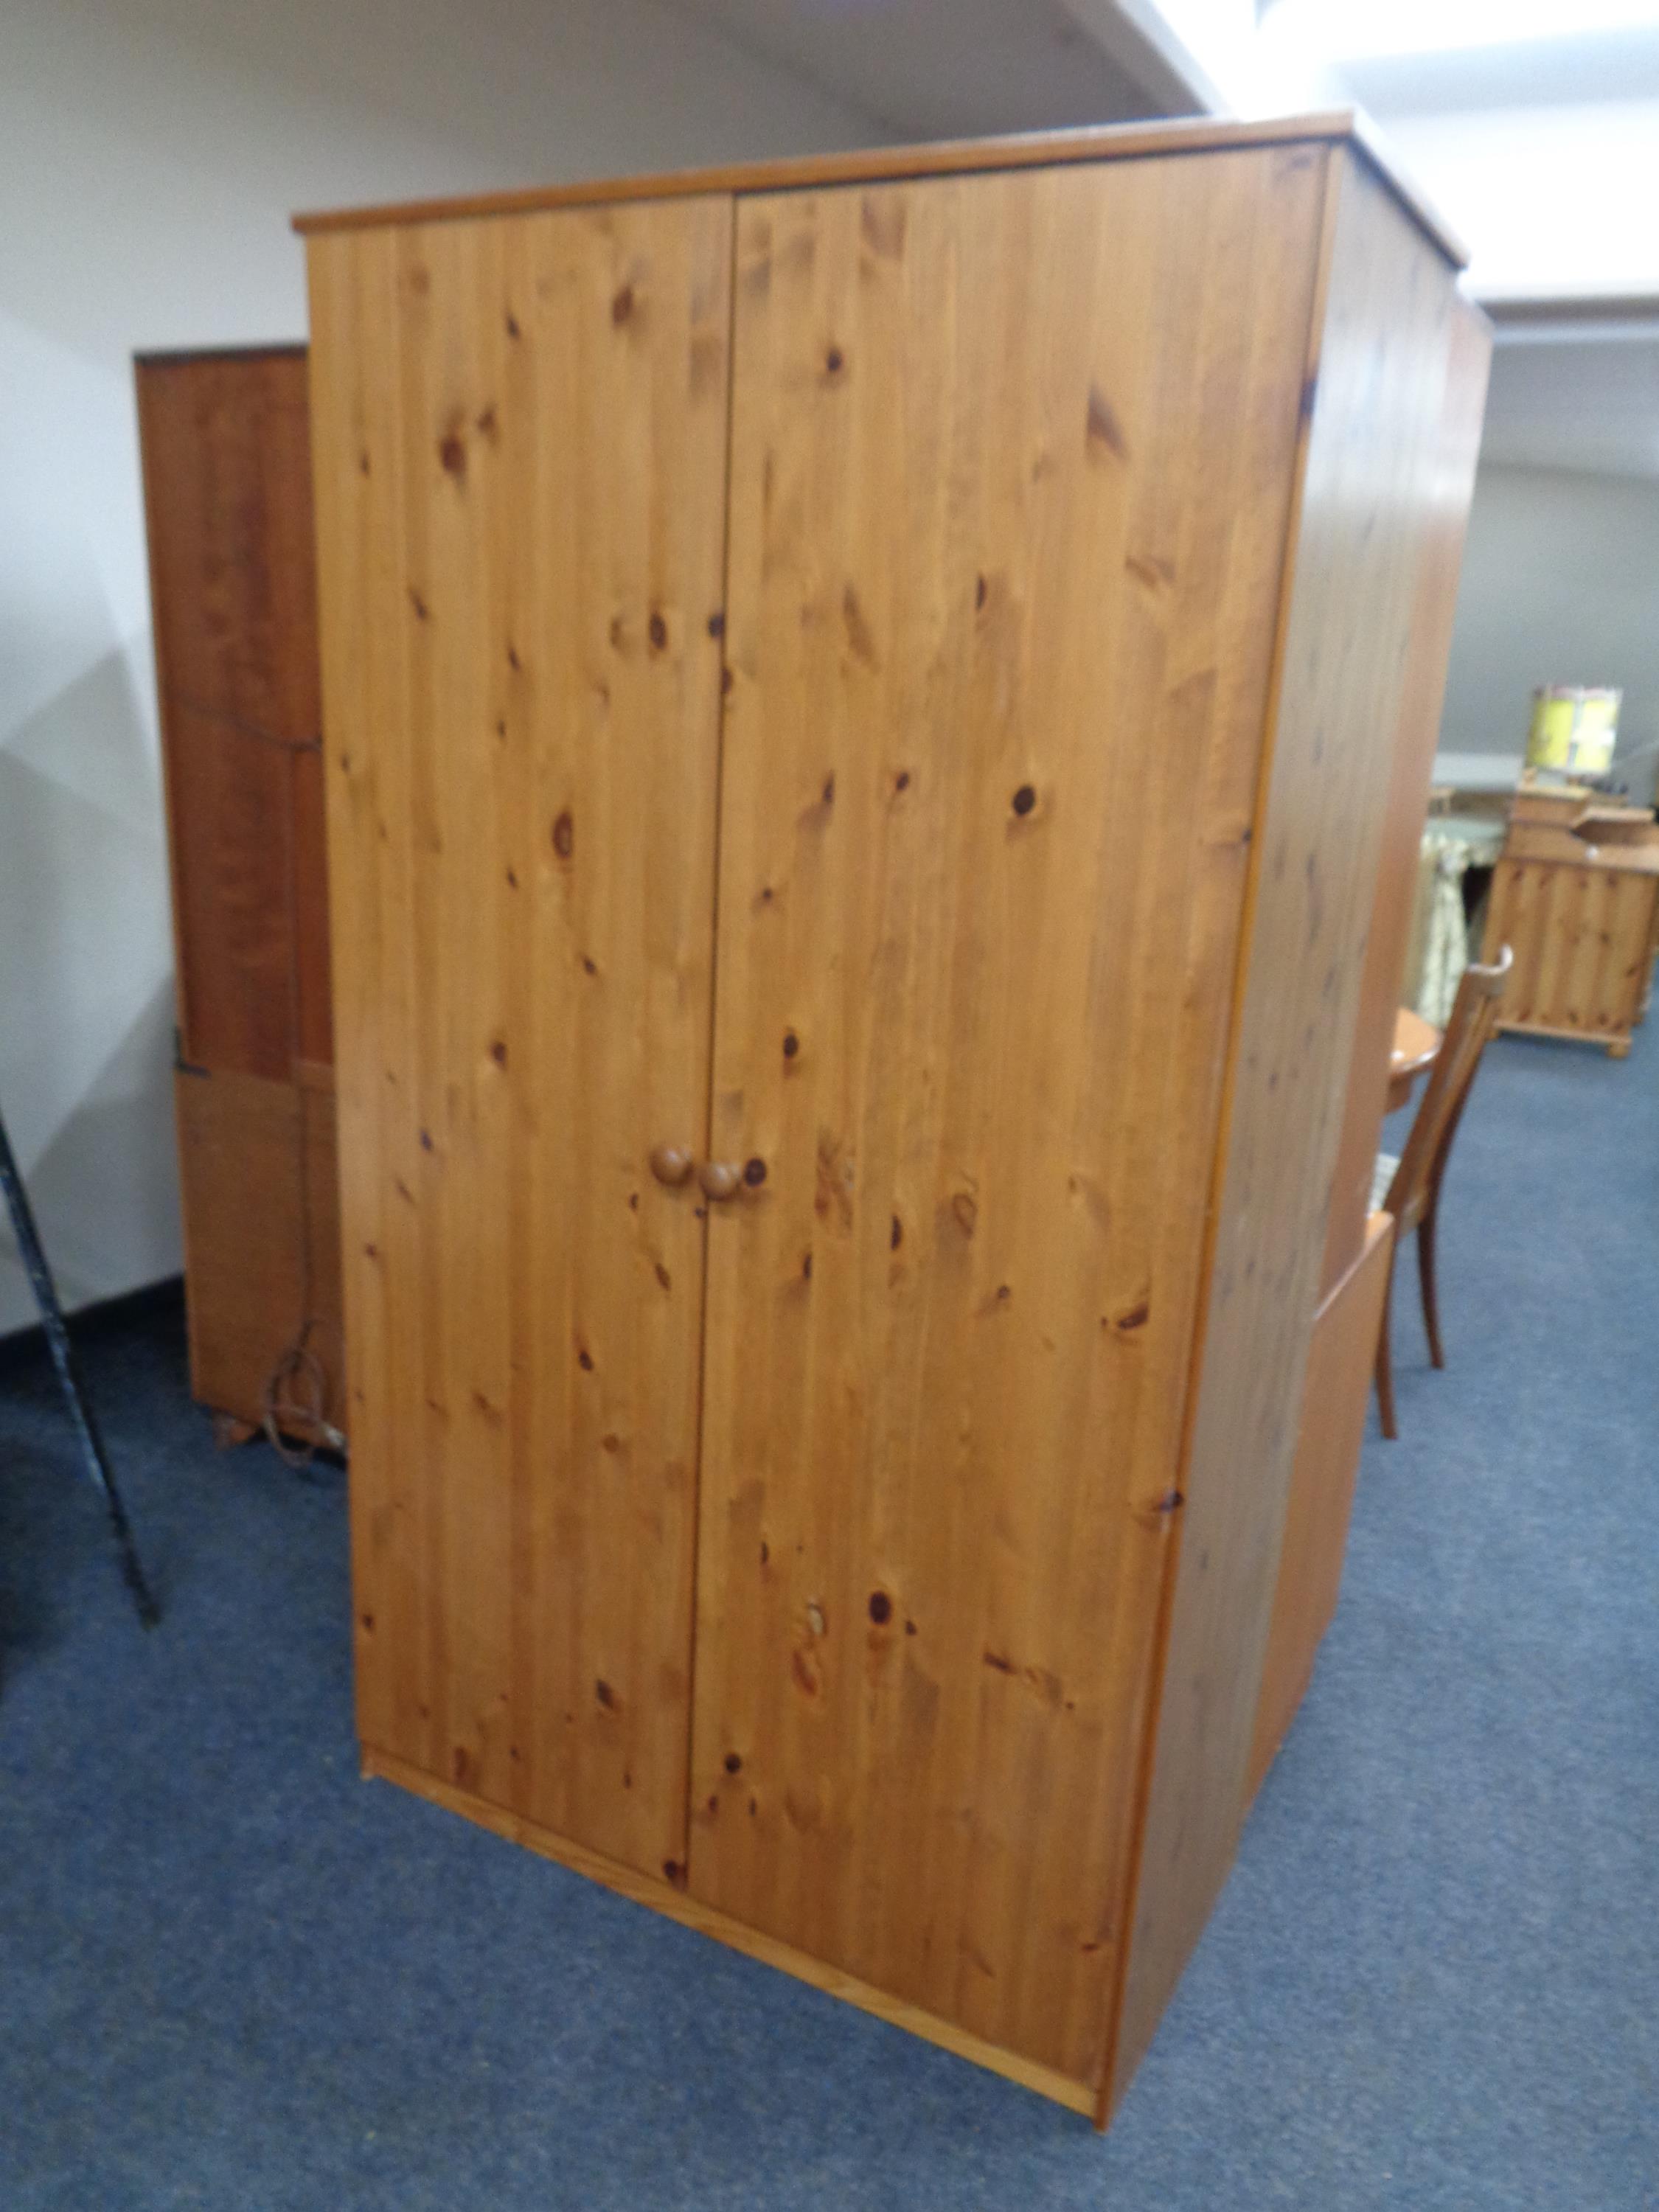 A pine double door wardrobe